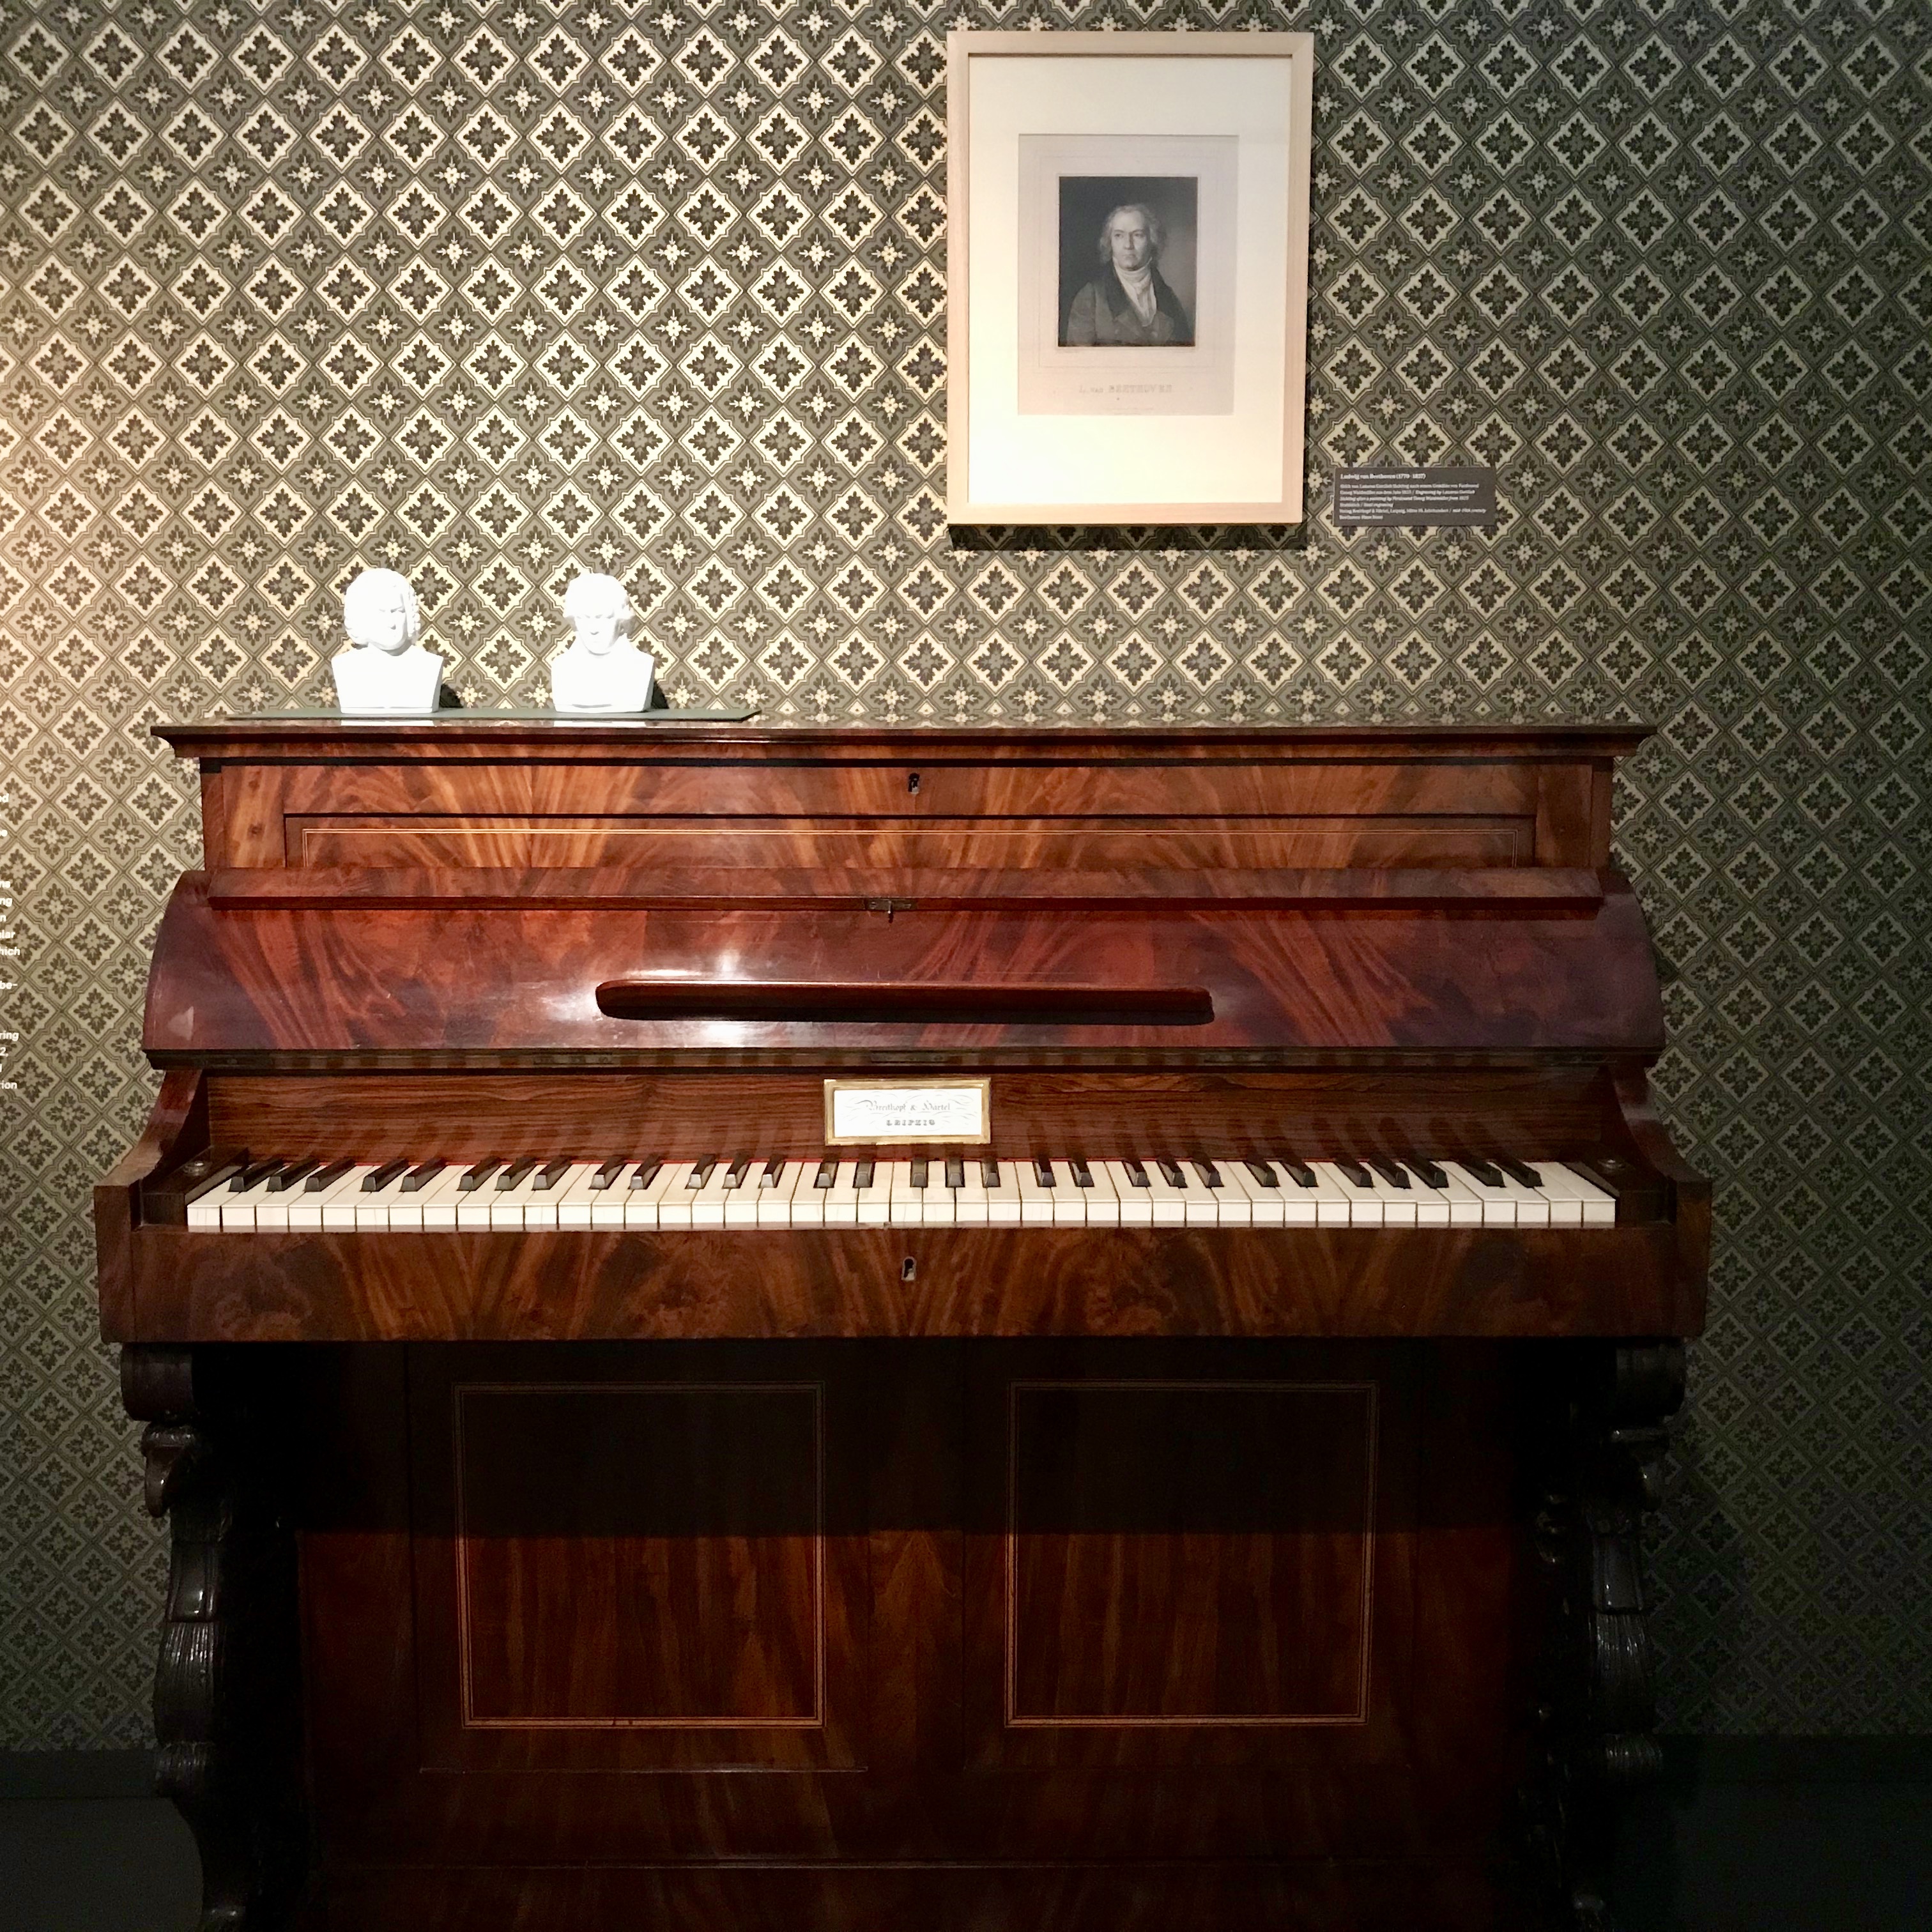 Pianino, Breitkopf & Härtel, 1837, Musikinstrumenten-Museum der Universität Leipzig, Inv.-Nr. 4295